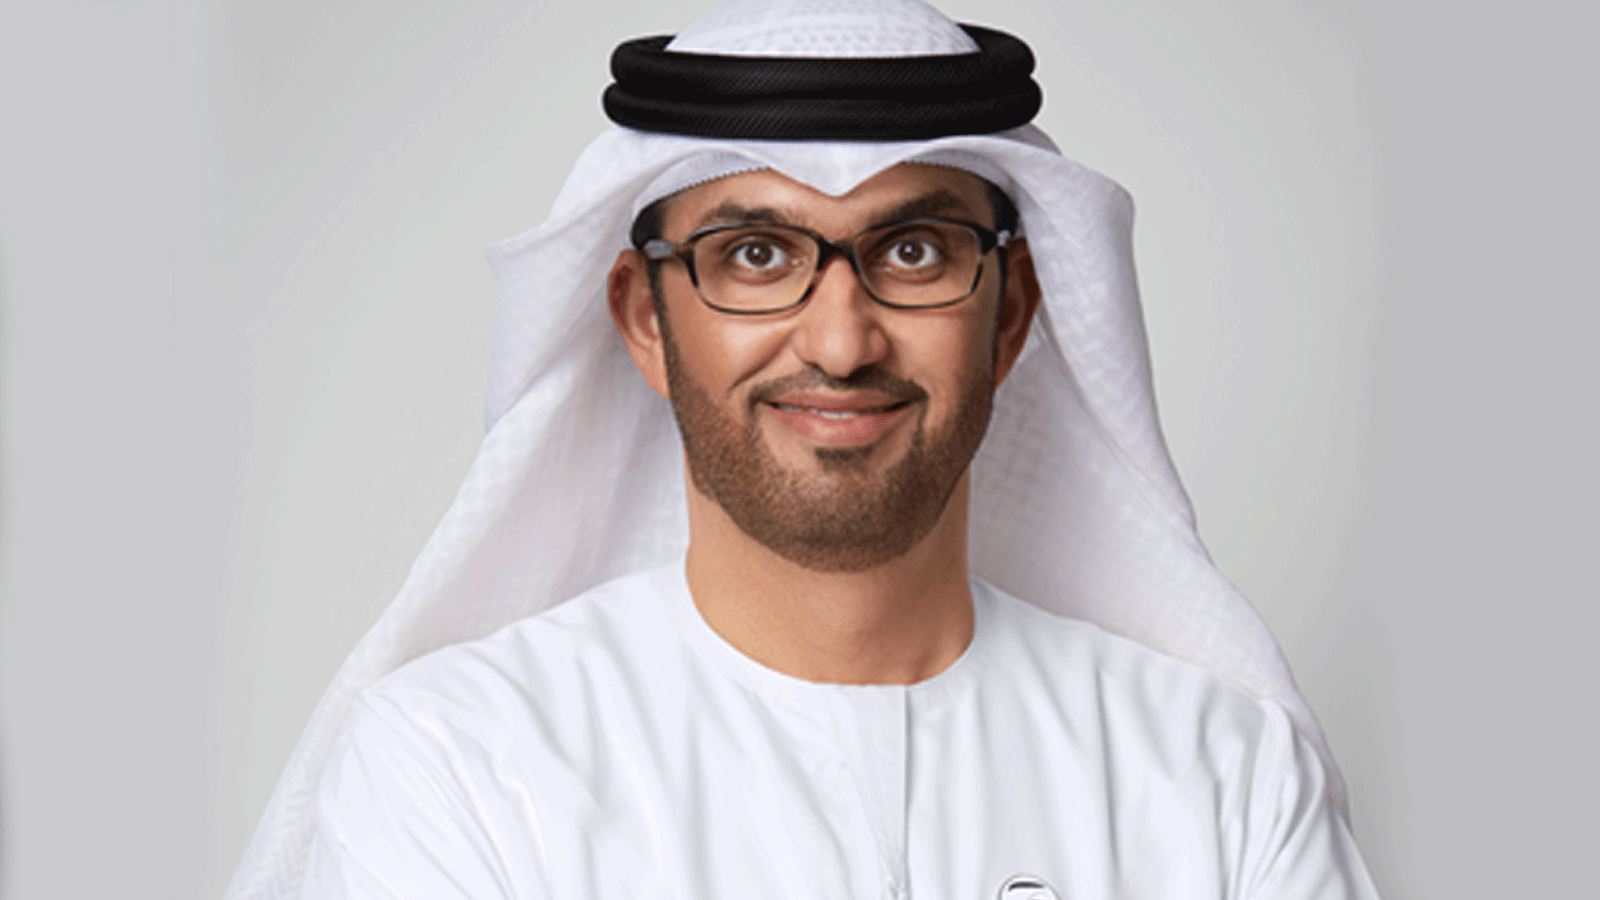 الدكتور سلطان أحمد الجابر، وزير الصناعة والتكنولوجيا المتقدمة والمبعوث الخاص لدولة الإمارات للتغير المناخي